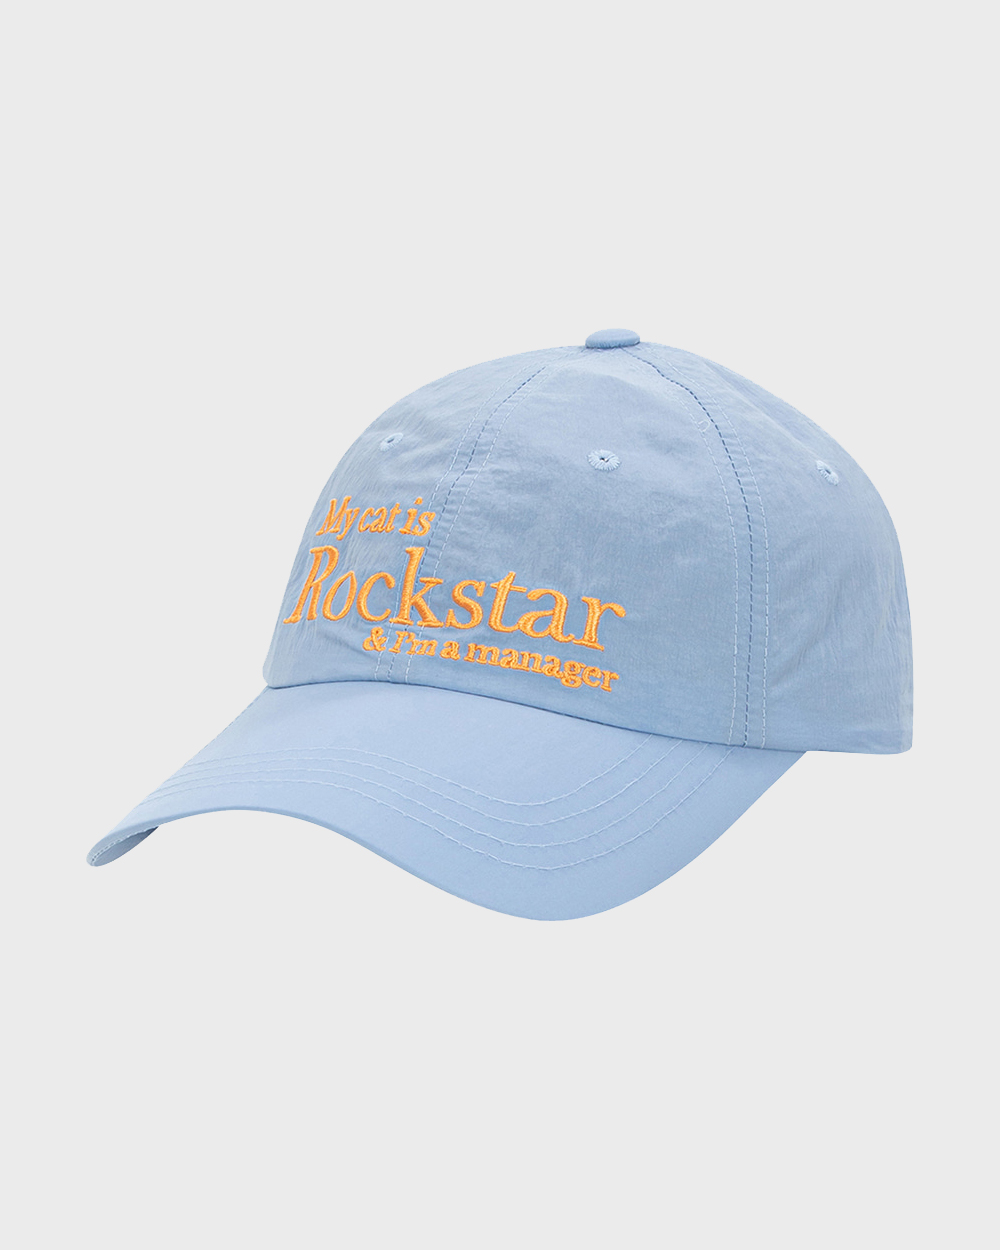 조거쉬 Rockstar cat cap (Sky blue)